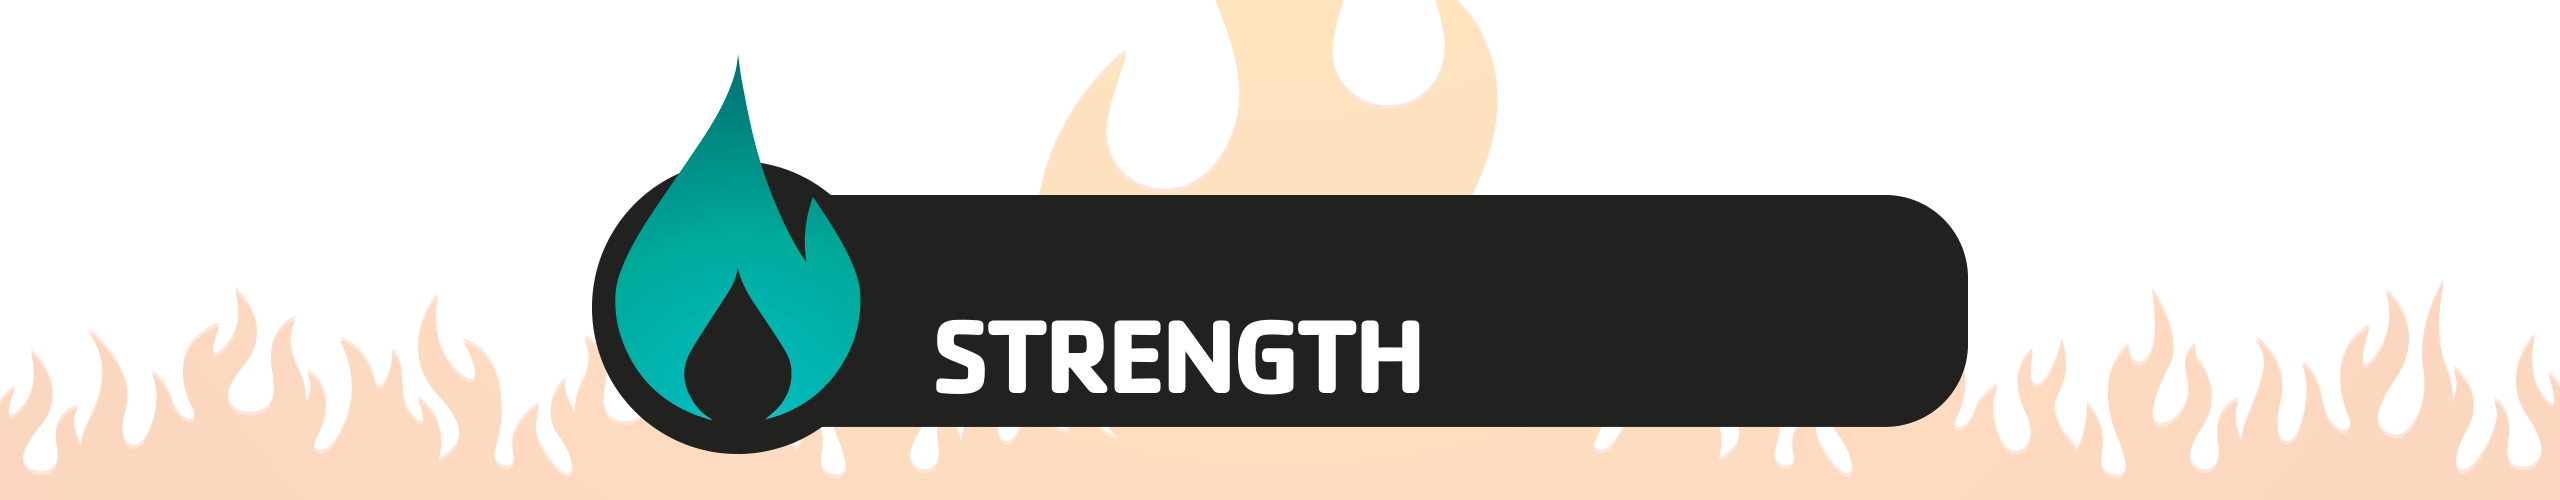 2021_YMCA_Ignite-Category-Strength_header